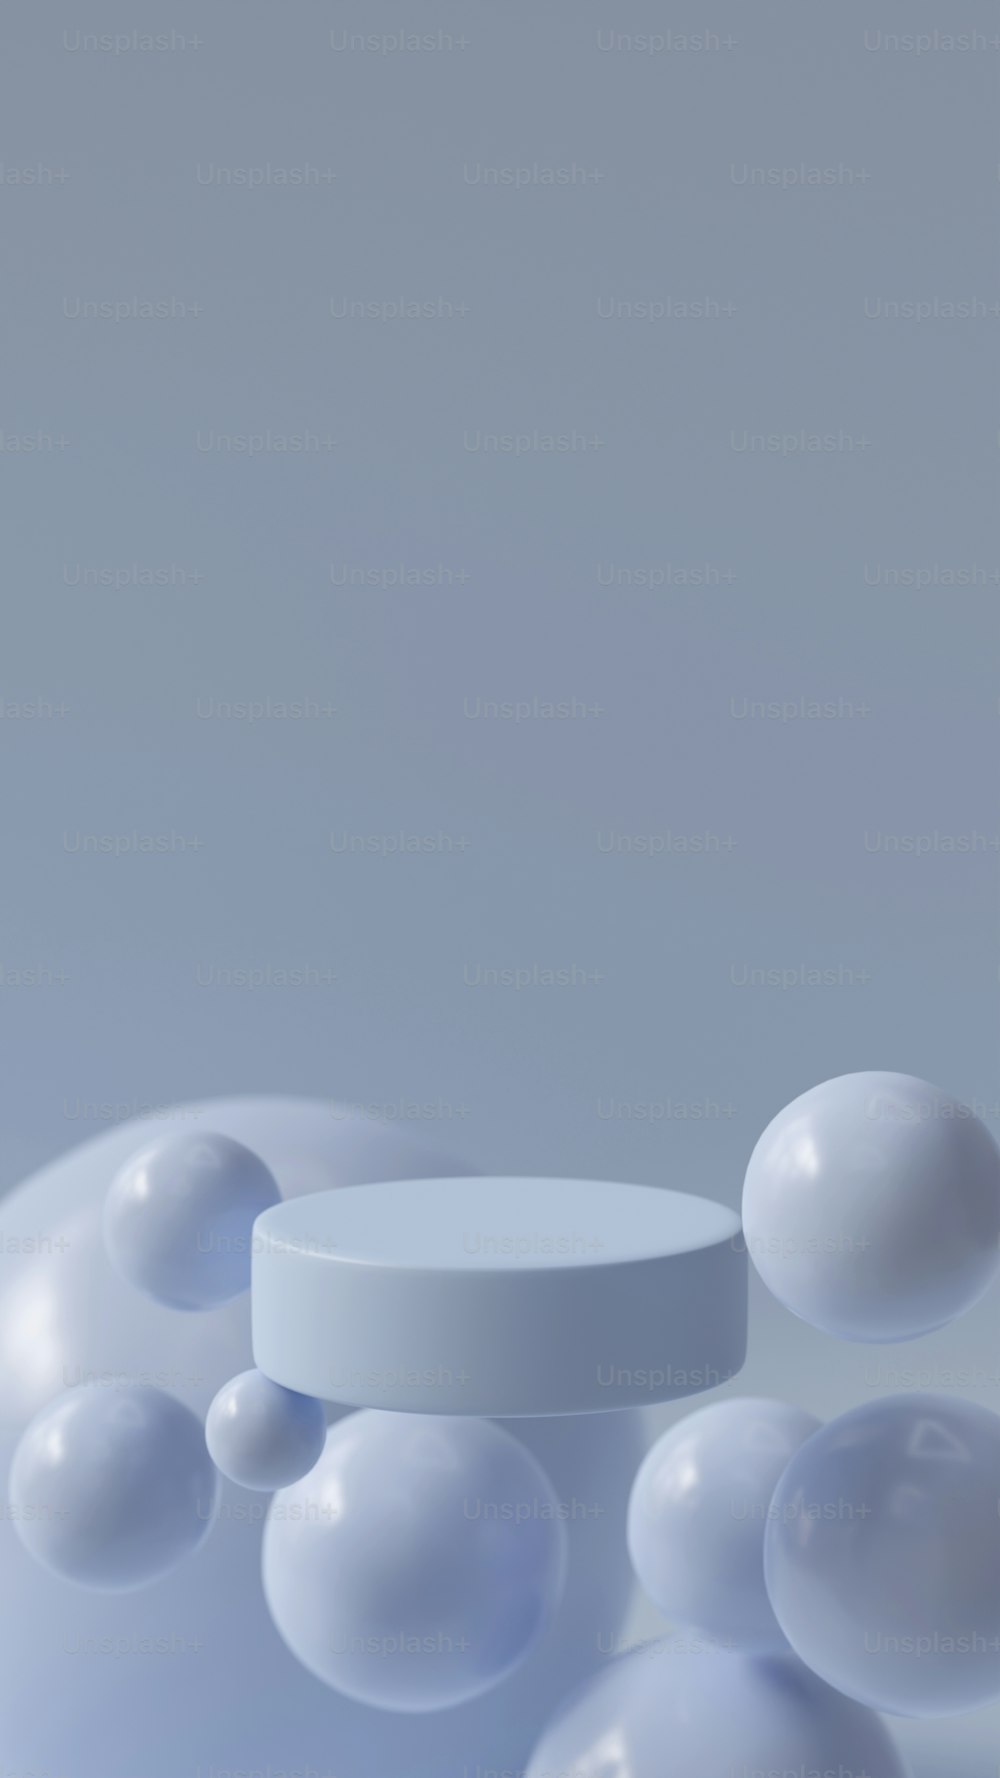 Un groupe de boules blanches flottant sur une table